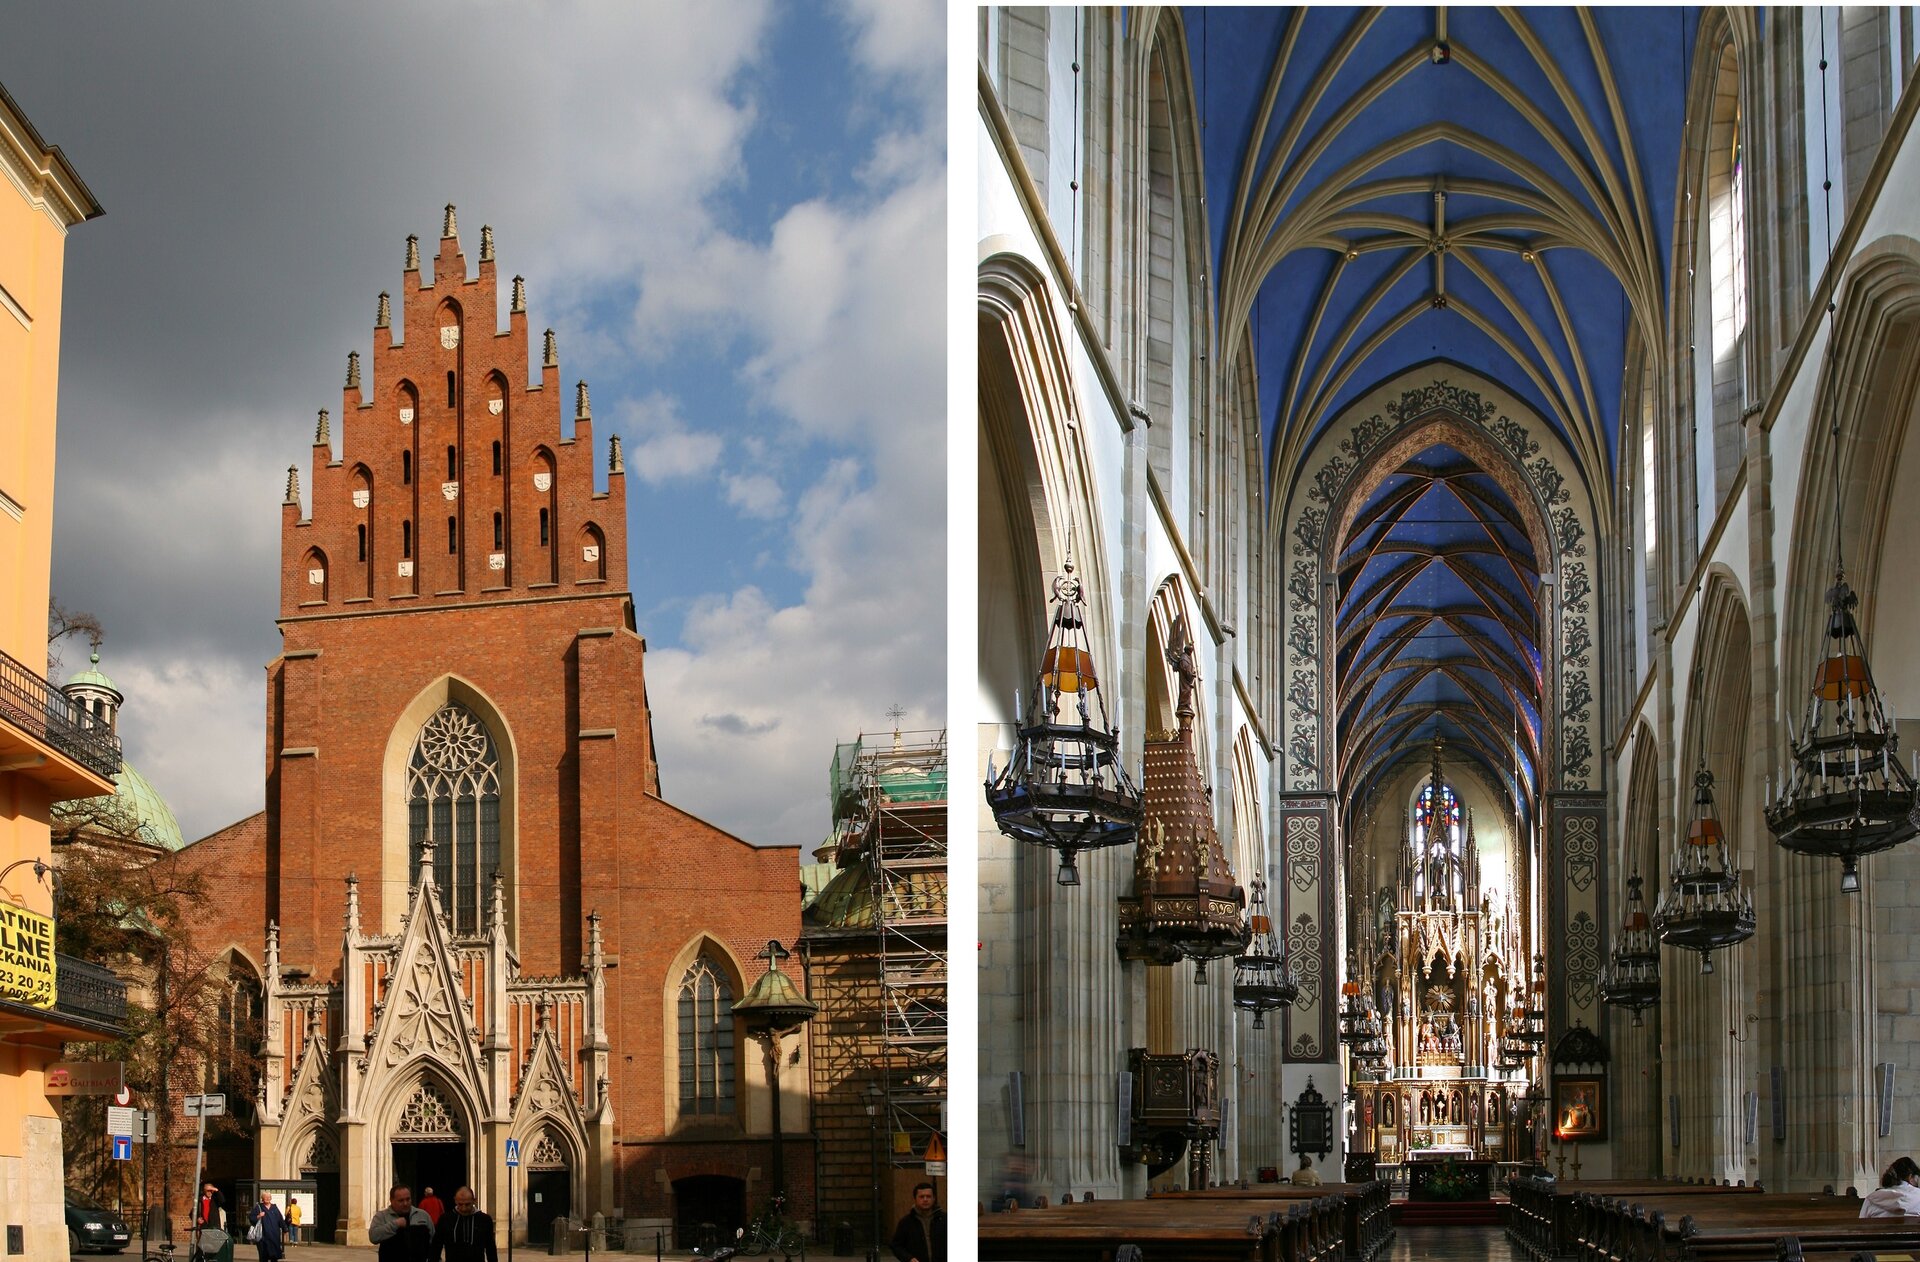 Ilustracja o kształcie poziomego prostokąta przedstawia dwie fotografie Kościoła św. Trójcy w Krakowie. Zdjęcie po lewej stronie przedstawia bryłę od strony zachodniej, z trzema portalami wejściowymi dekorowanymi wimpergami i wieżyczkami. Środkowy portal jest wyższy i szerszy od bocznych. W ścianie nad głównym portalem znajduje się dużych rozmiarów okno zakończone łukiem ostrym.  Całość wieńczy trójkątny, uskokowy szczyt. Po bokach znajdują się fragmenty budynków miejskich. Tłem jest błękitne niebo z białymi obłokami. Zdjęcie po prawej stronie przedstawia wnętrze kościoła. Ukazana jest nawa główna i ściana dzieląca ją od nawy bocznej, z filarami i arkadowymi łukami. W dali znajduje się prezbiterium. Zdjęcie zostało wykonane od dołu, widać na nim sklepienie gwiaździste. Jego płaszczyzny są koloru błękitnego. 